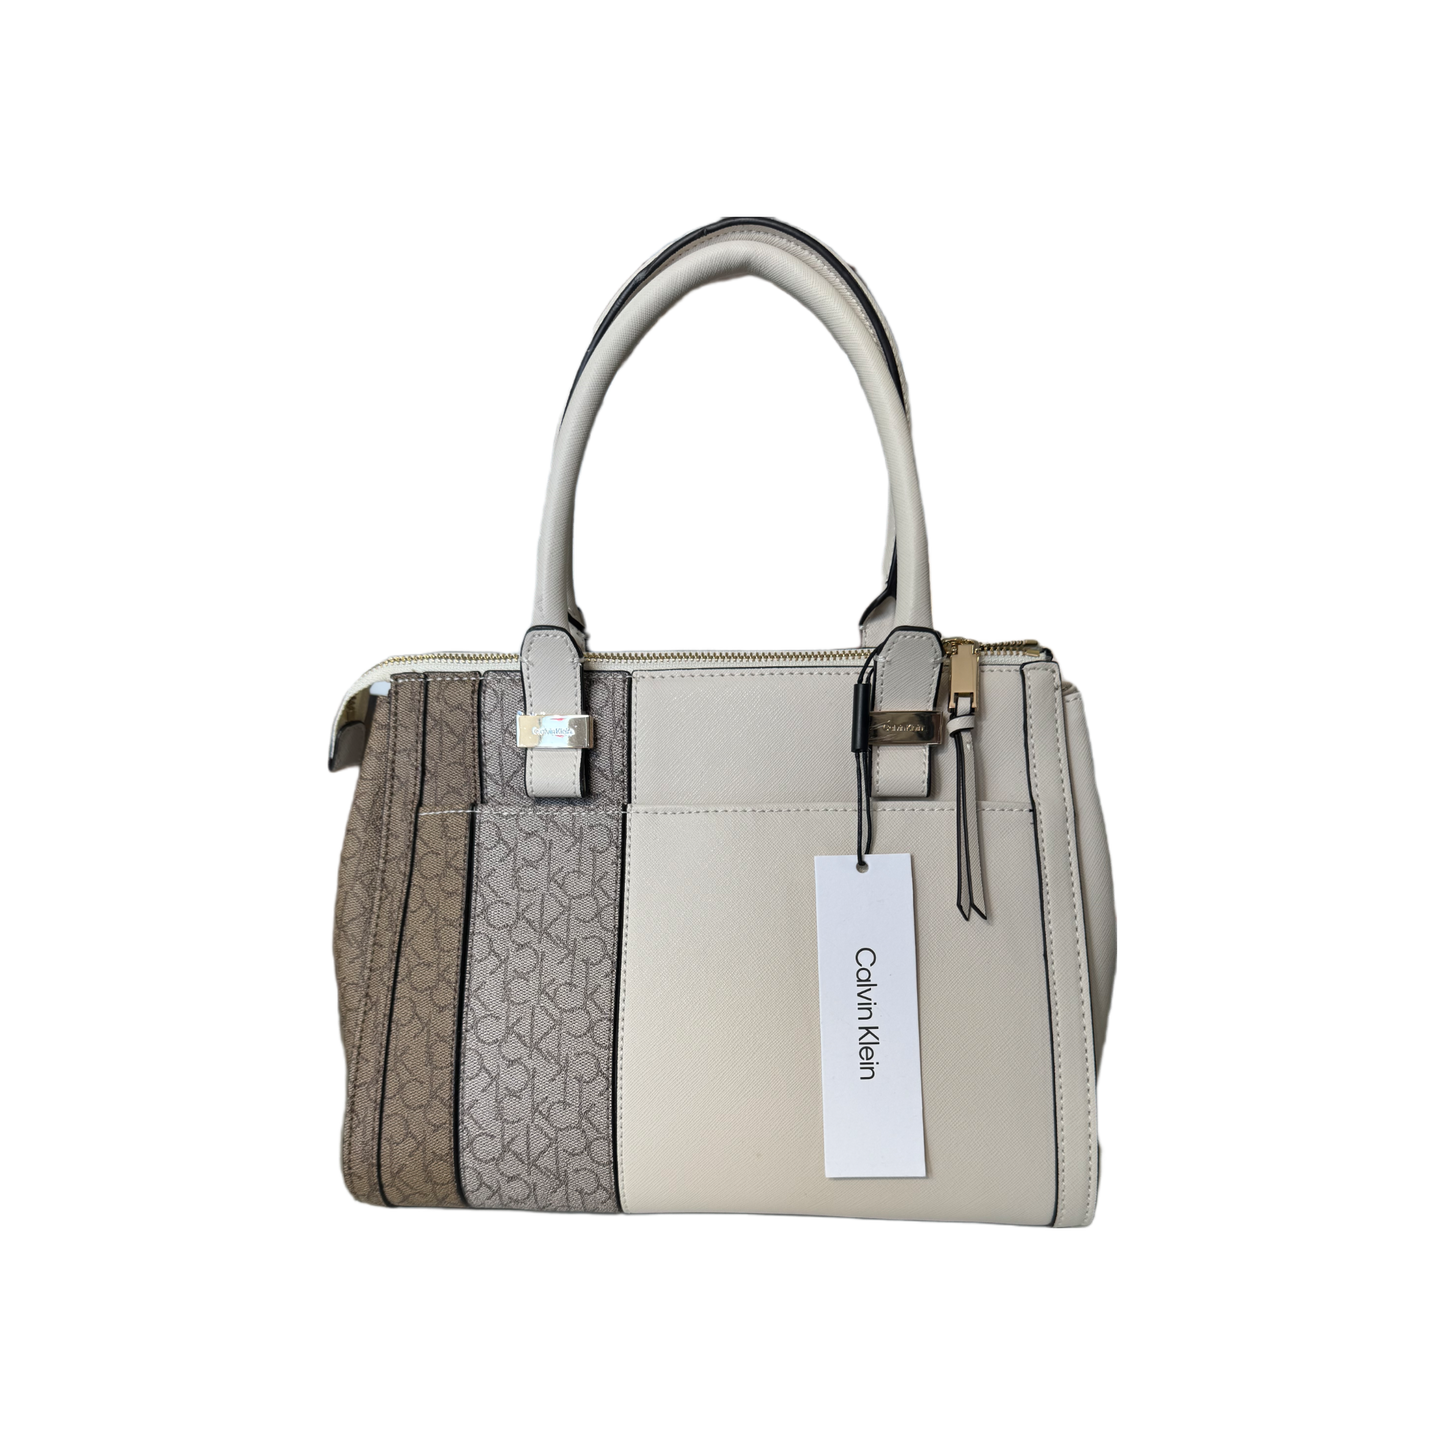 Calvin Klein Woman’s Handbags